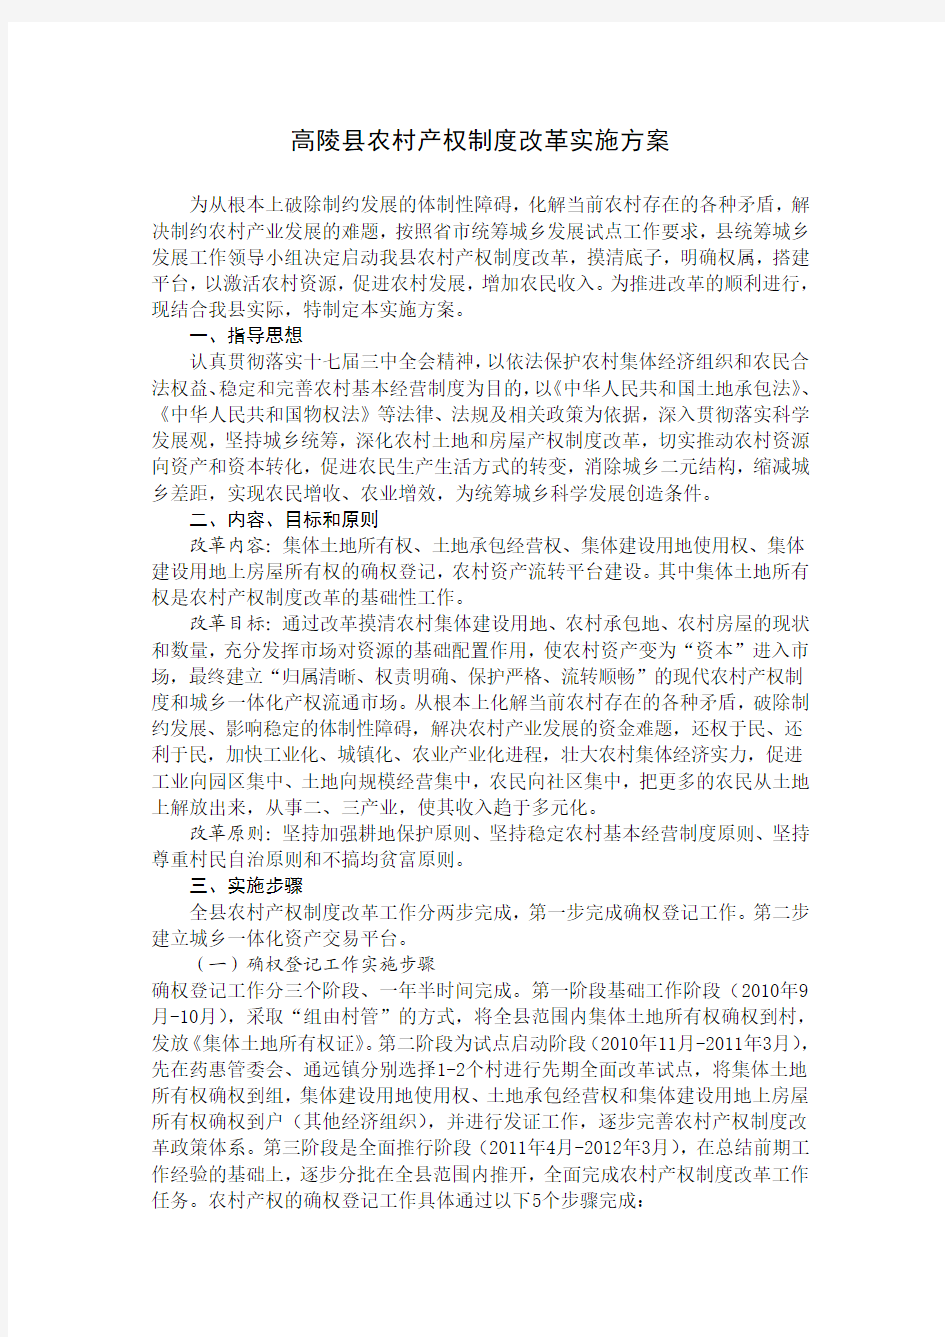 高陵县农村产权制度改革实施方案